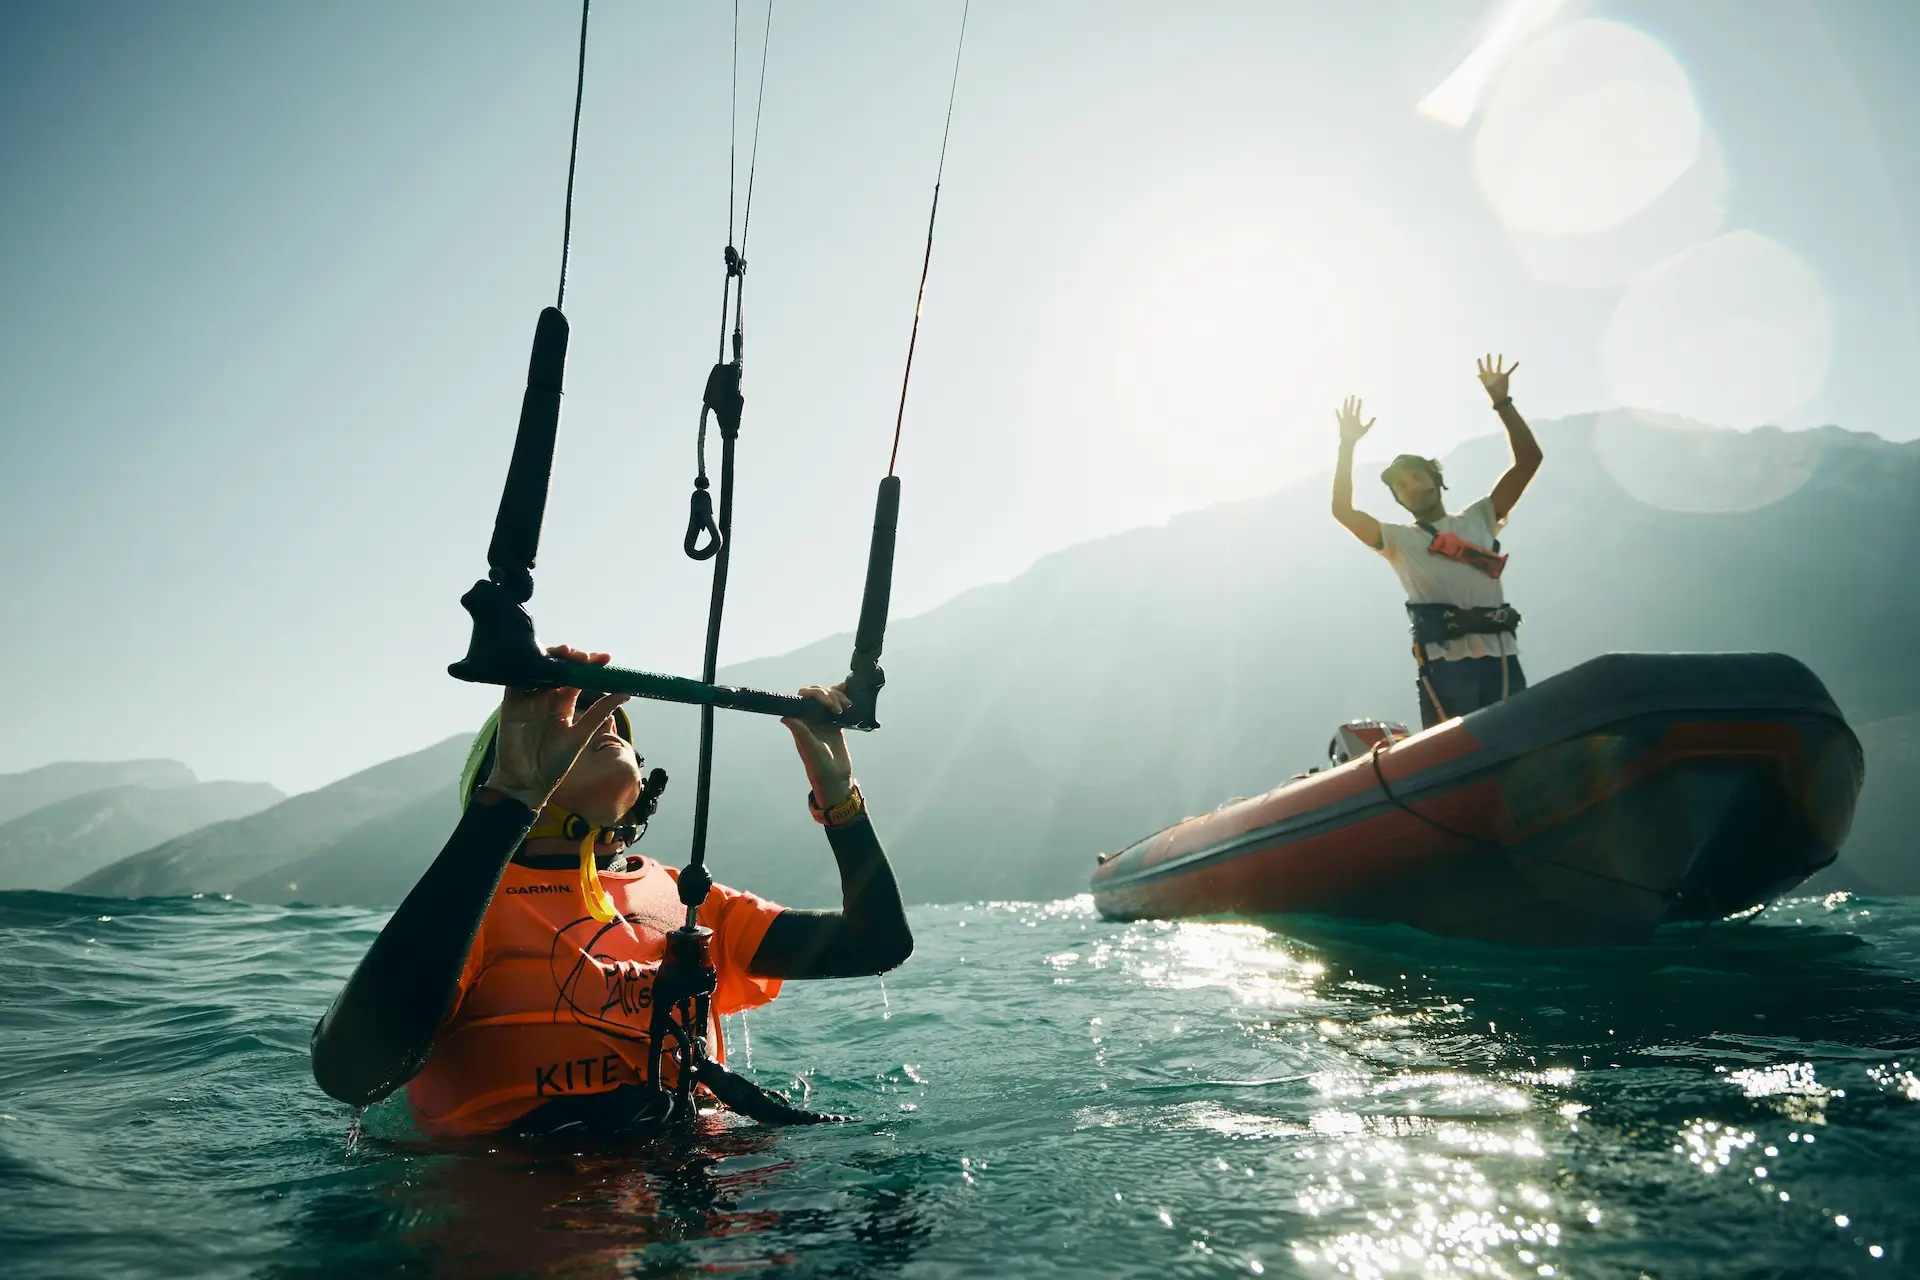 Kiteschüler im Wasser Lehrer auf dem Boot am Gardasee